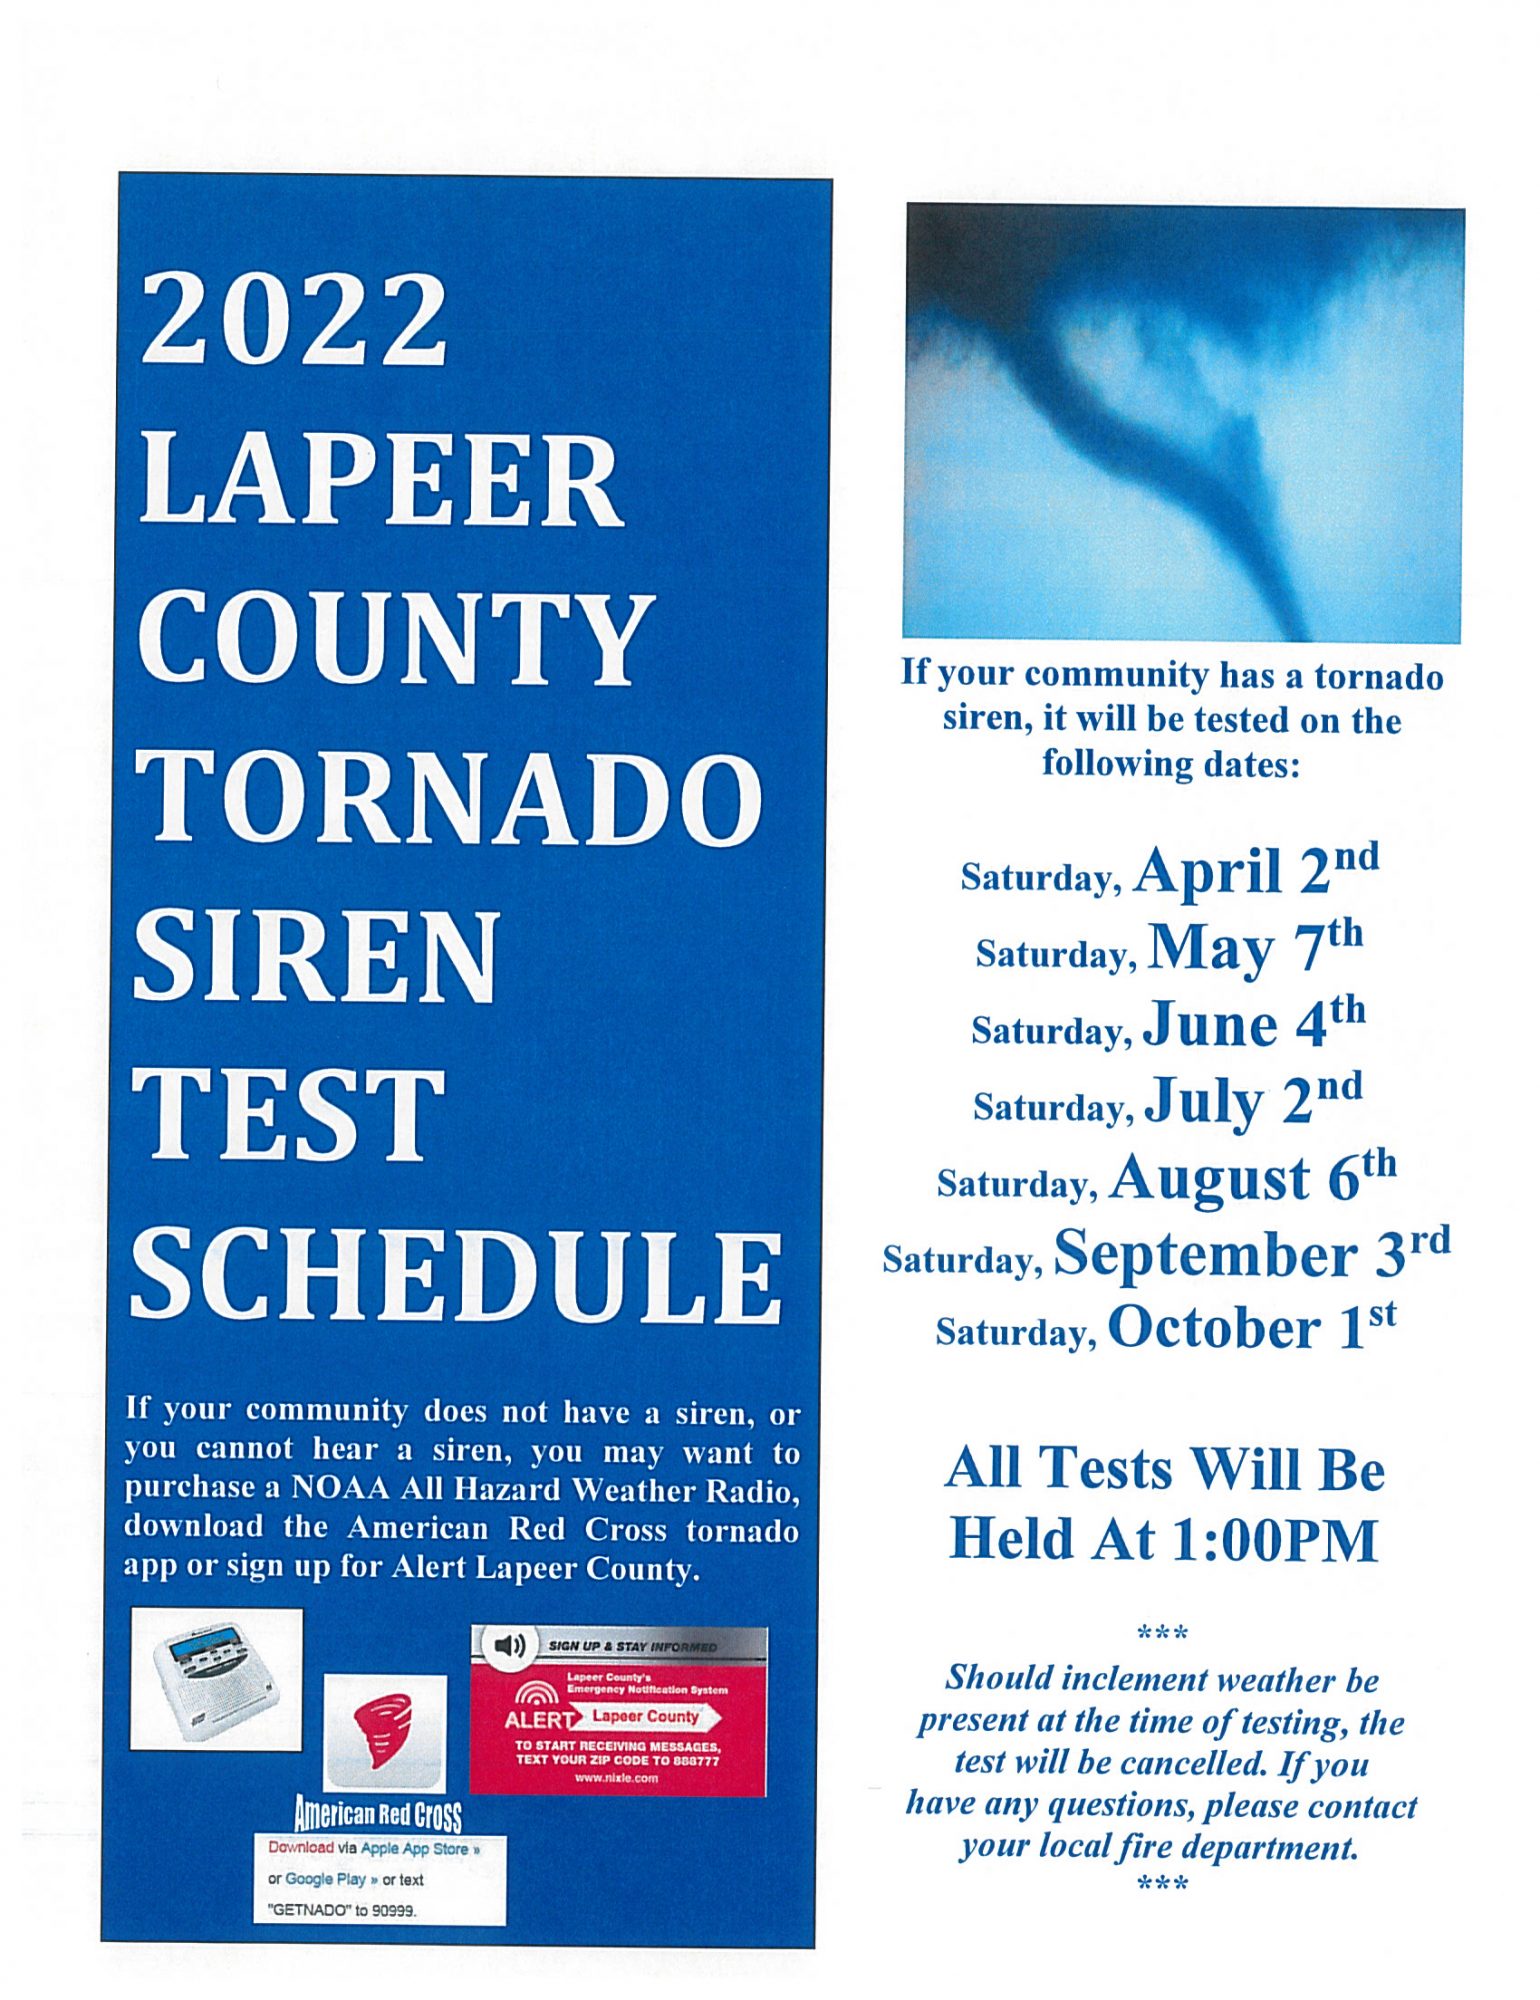 2022 tornado siren test schedule